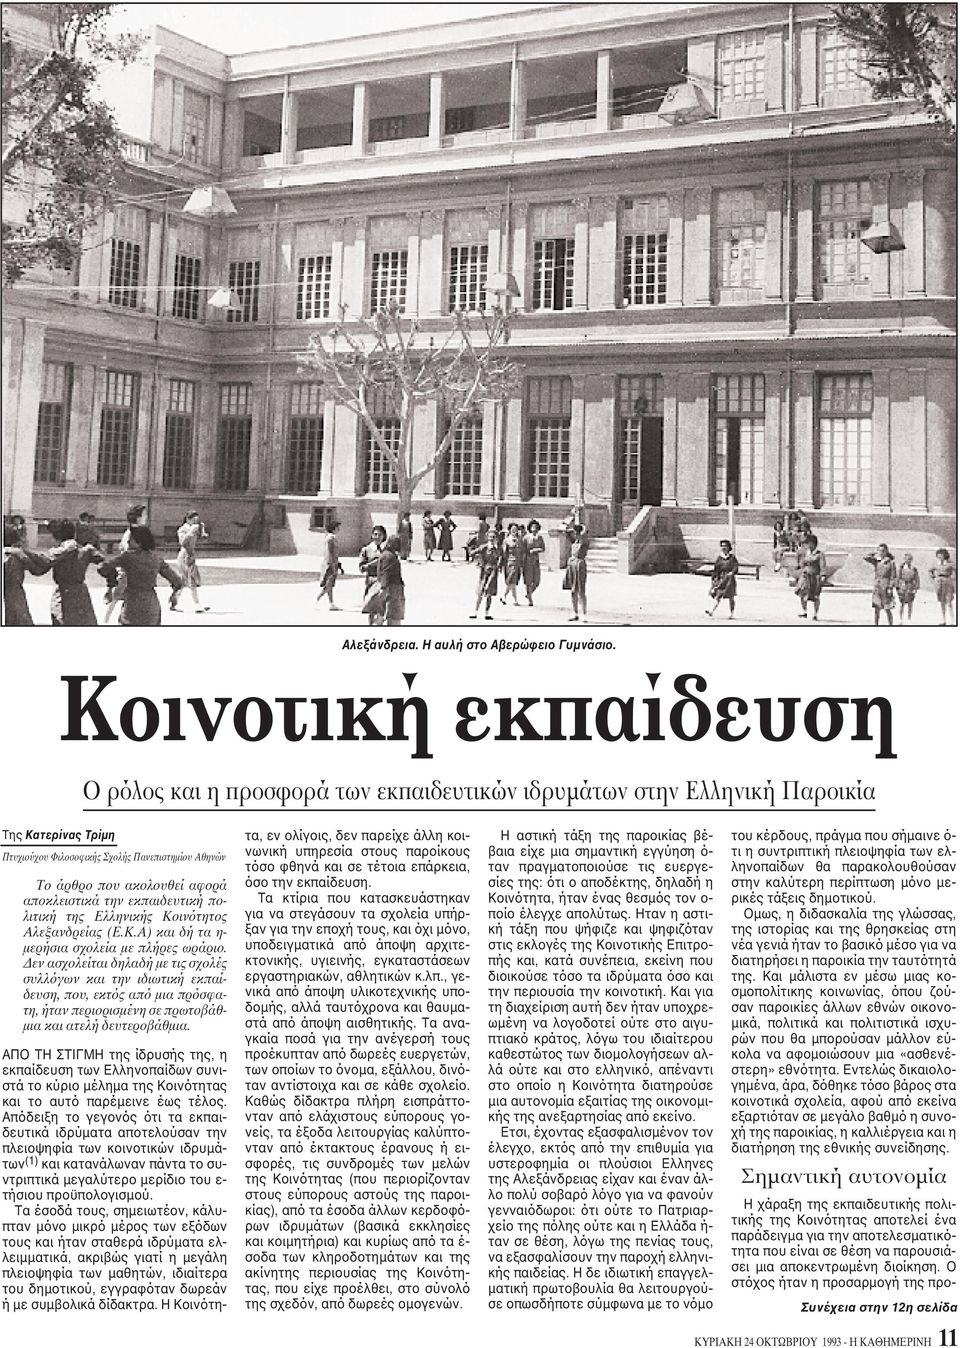 αποκλειστικά την εκπαιδευτική πολιτική της Eλληνικής Kοινότητος Aλεξανδρείας (E.K.A) και δή τα η- μερήσια σχολεία με πλήρες ωράριο.